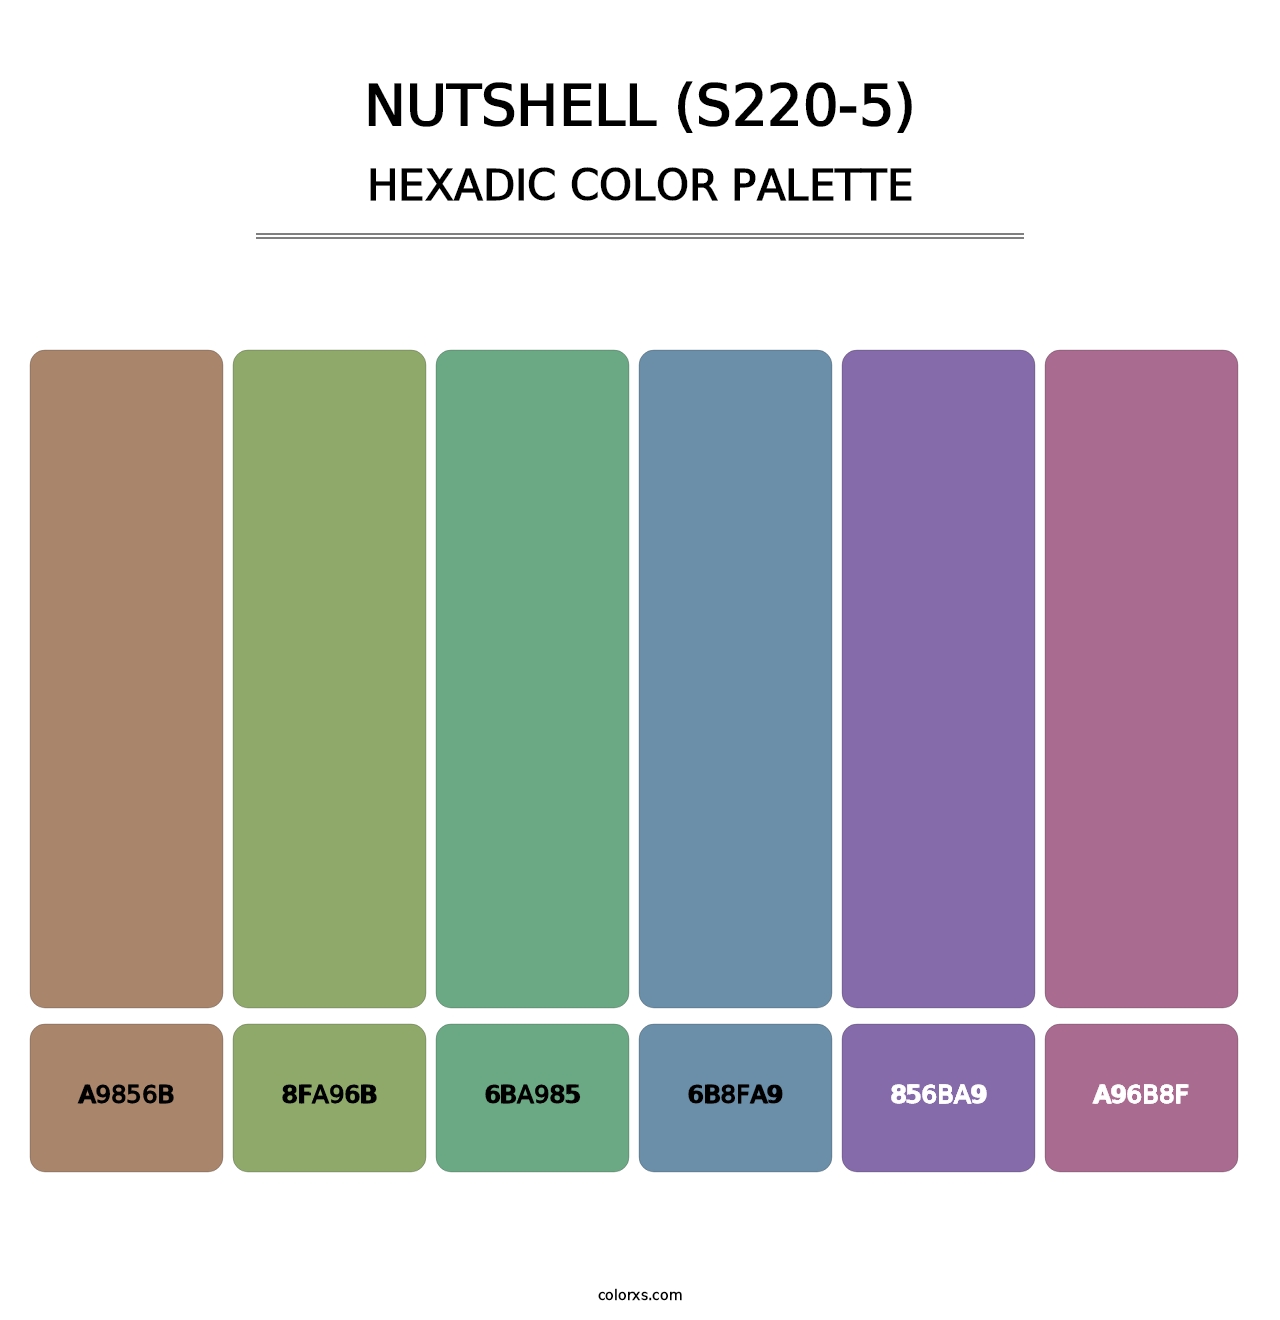 Nutshell (S220-5) - Hexadic Color Palette